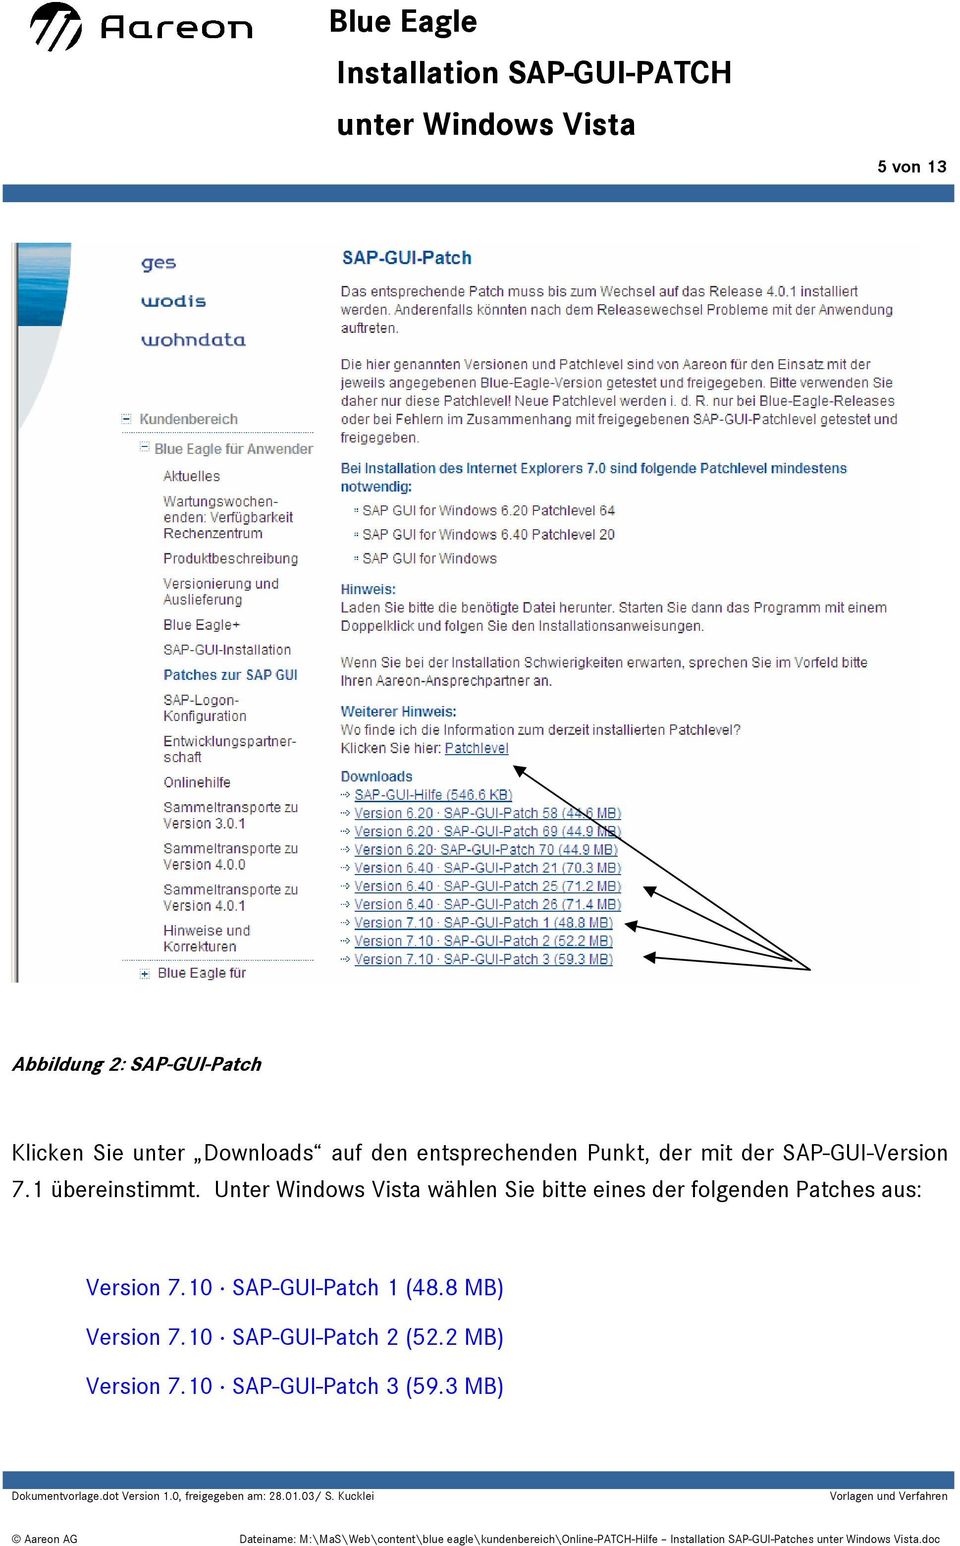 Unter Windows Vista wählen Sie bitte eines der folgenden Patches aus: Version 7.10 SAP-GUI-Patch 1 (48.